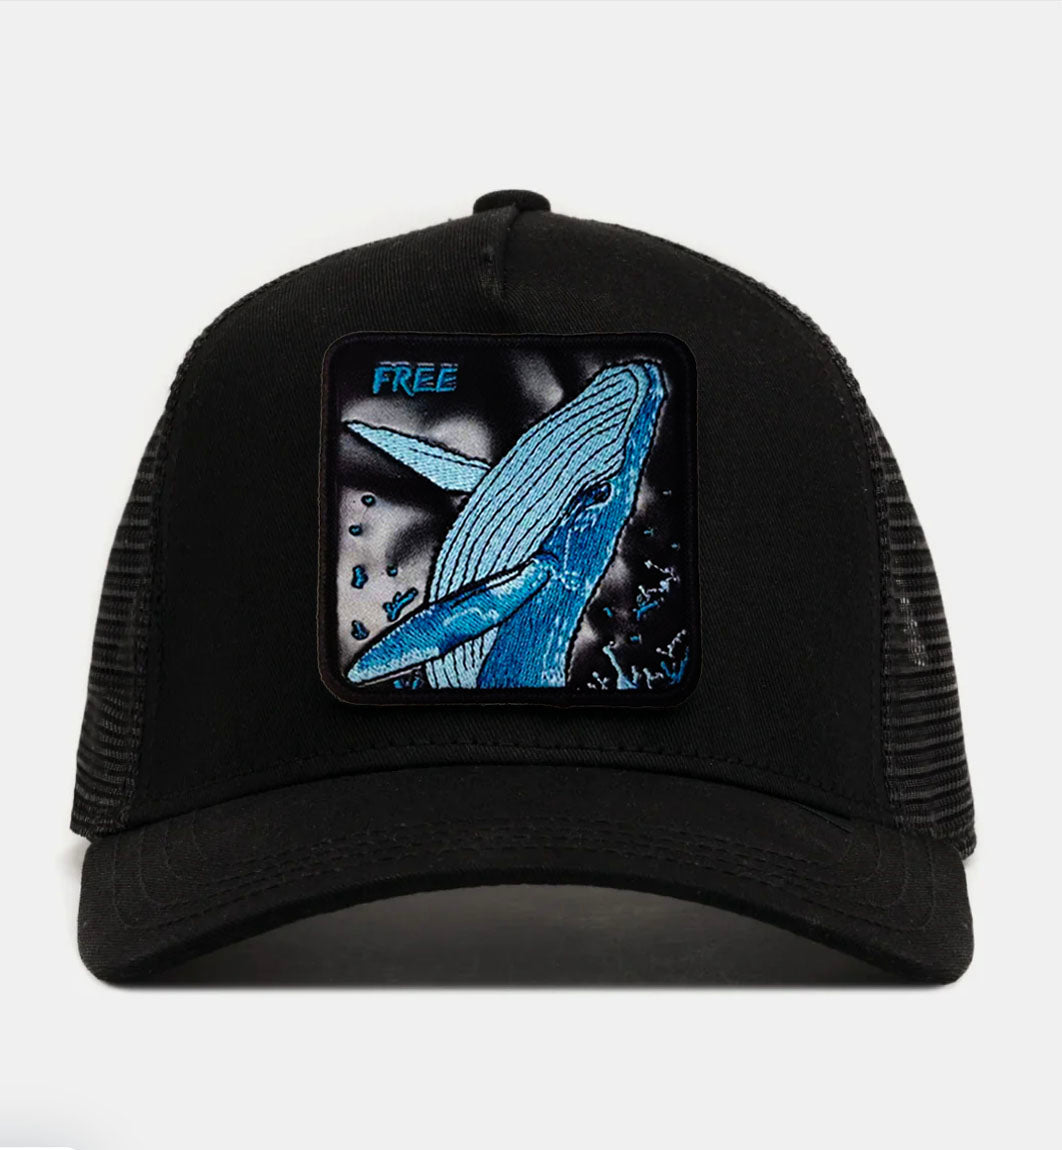 Whale "Free" Trucker Hat